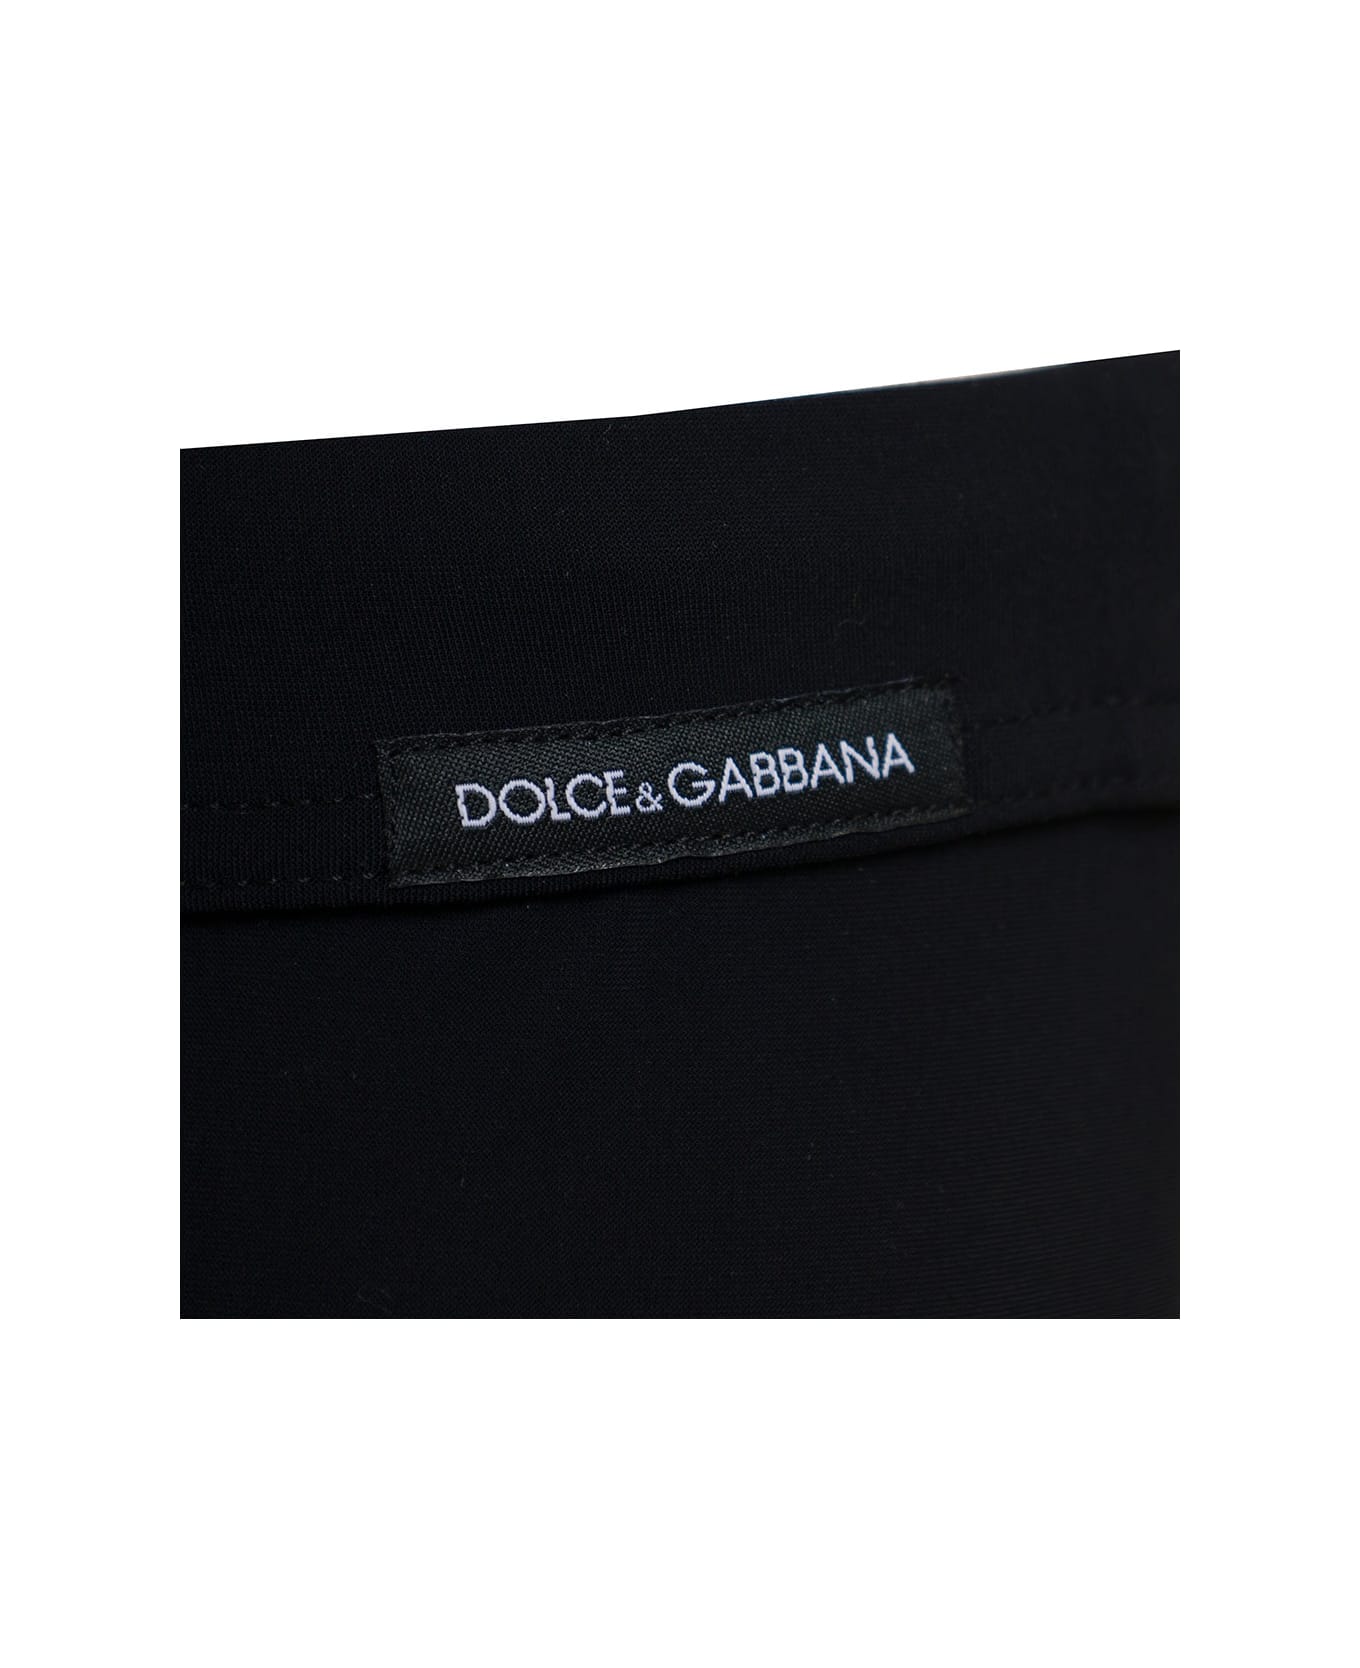 Dolce & Gabbana Black Stretch Fabric Swim Briefs With Logo - Black